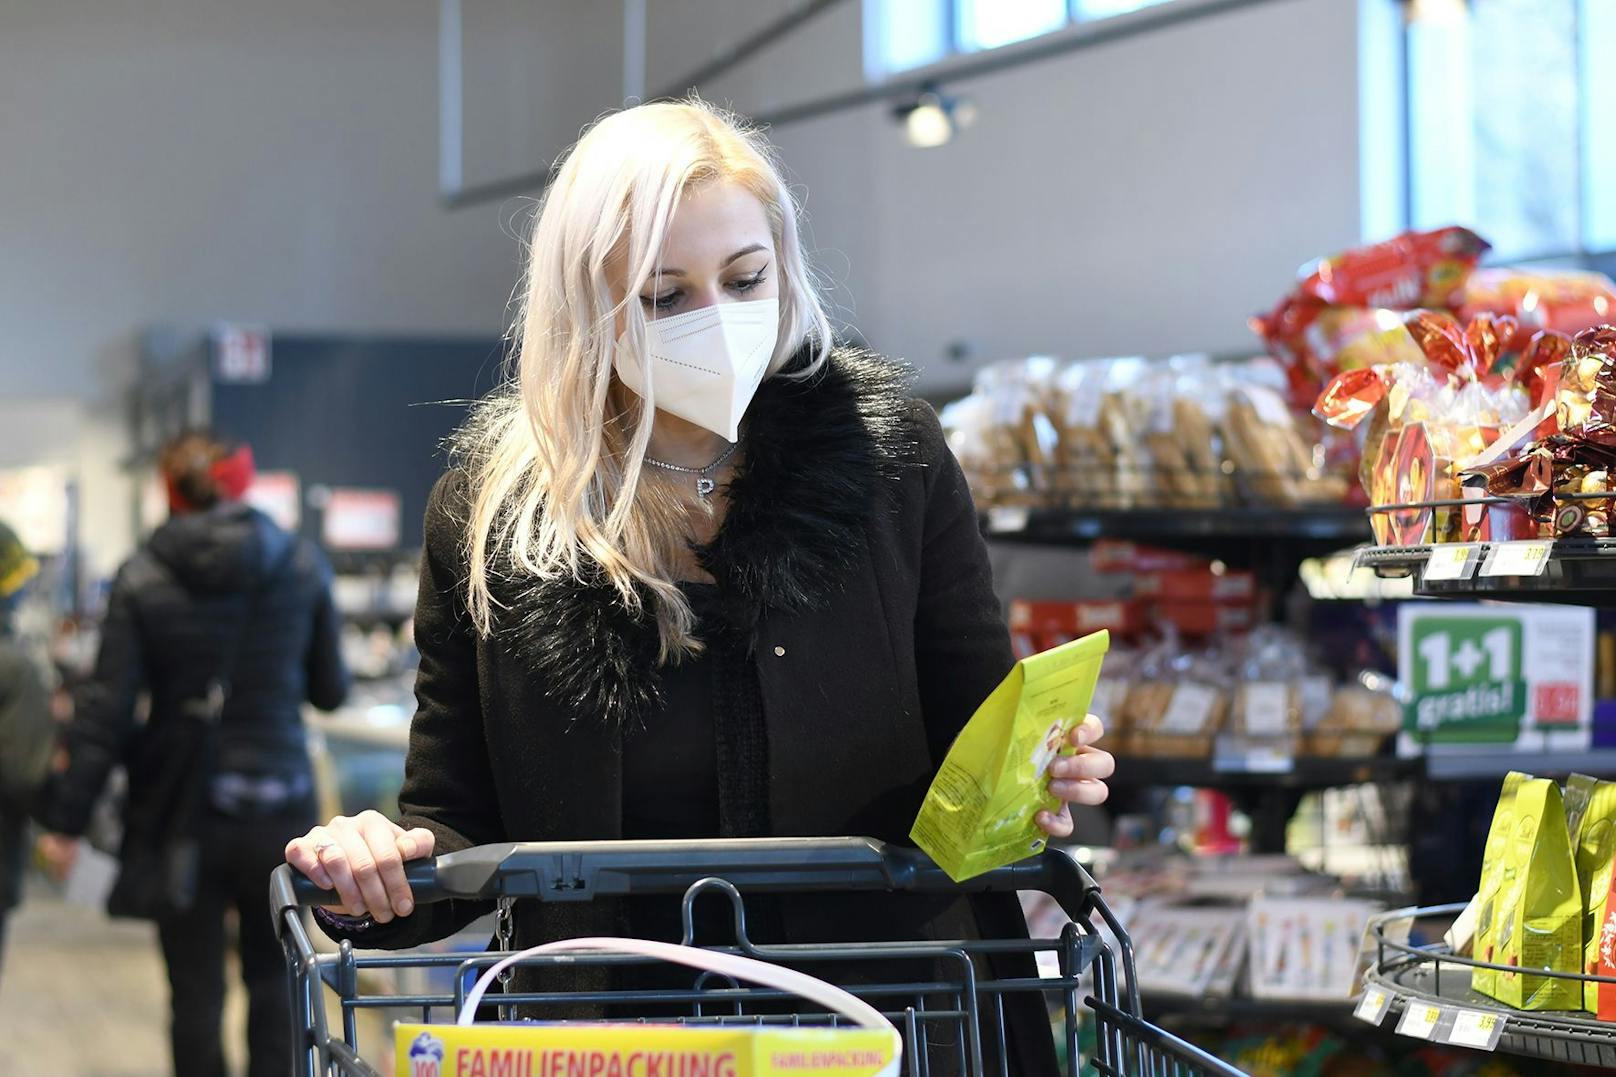 In Supermärkten ist die FFP2-Maske Pflicht. Im Linzer Gemeinderat nicht. Das ärgert Grüne und ÖVP.